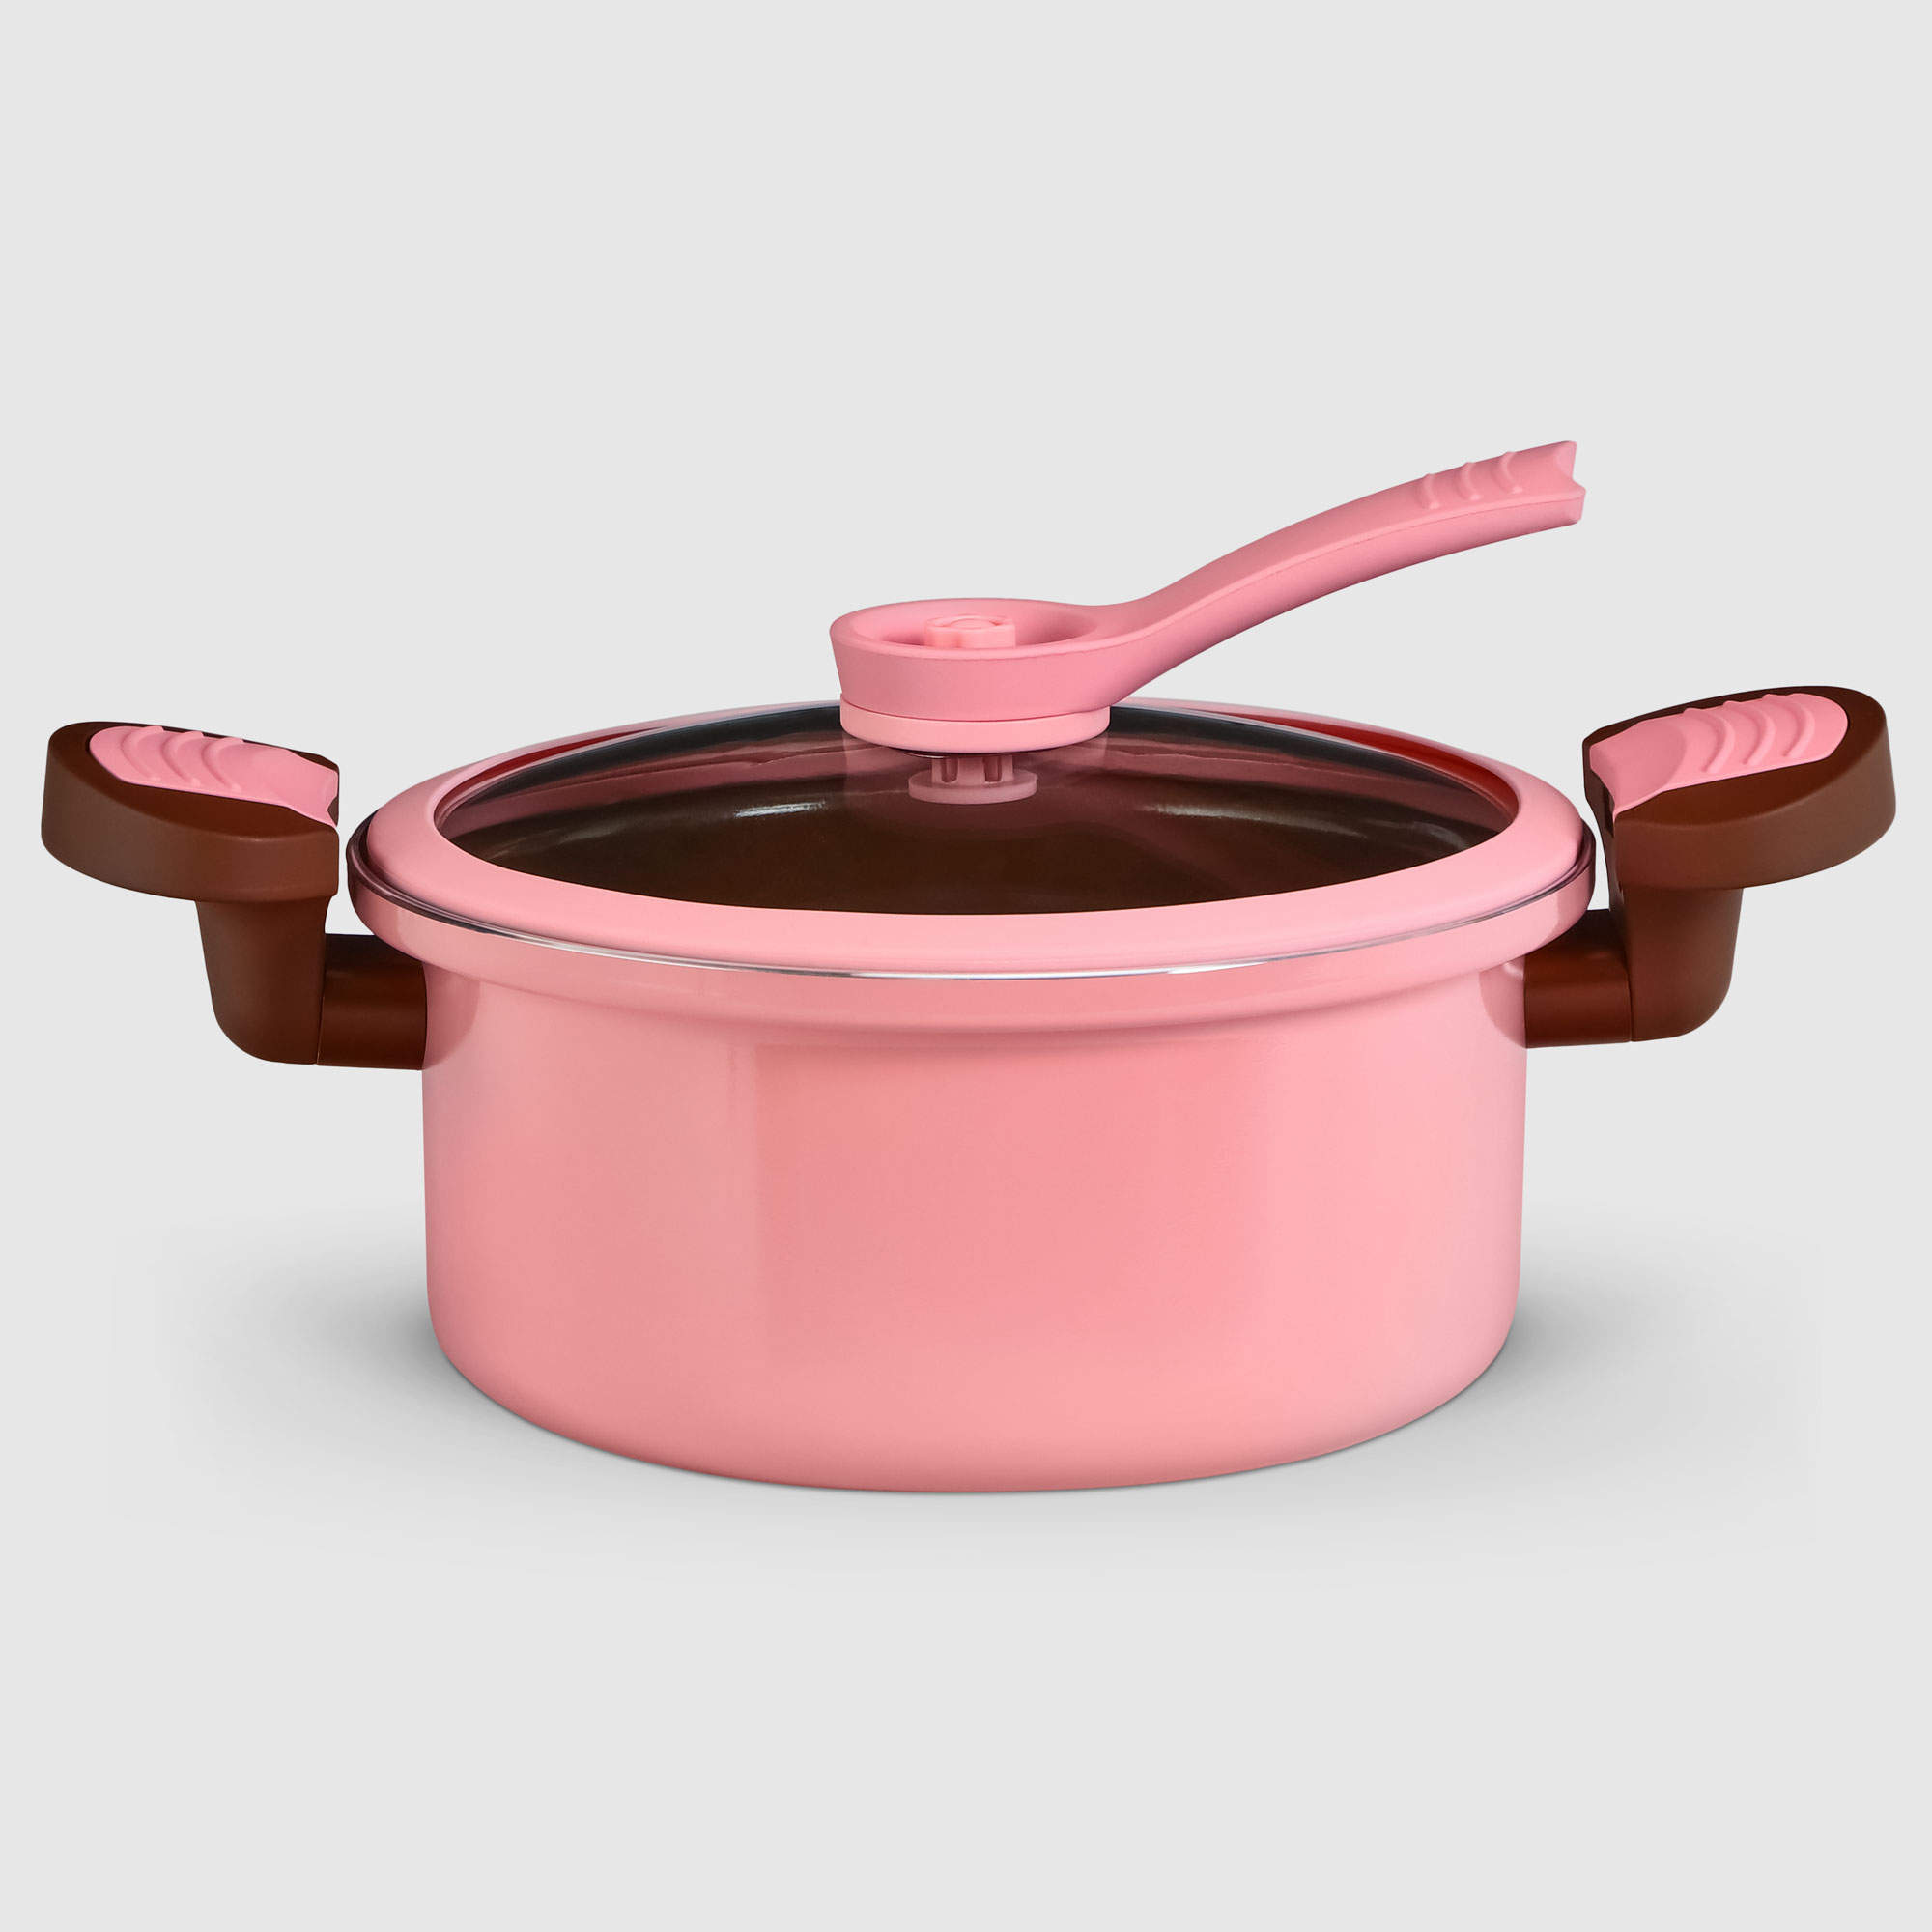 Скороварка низкого давления Kitchenstar 20 см, цвет розовый